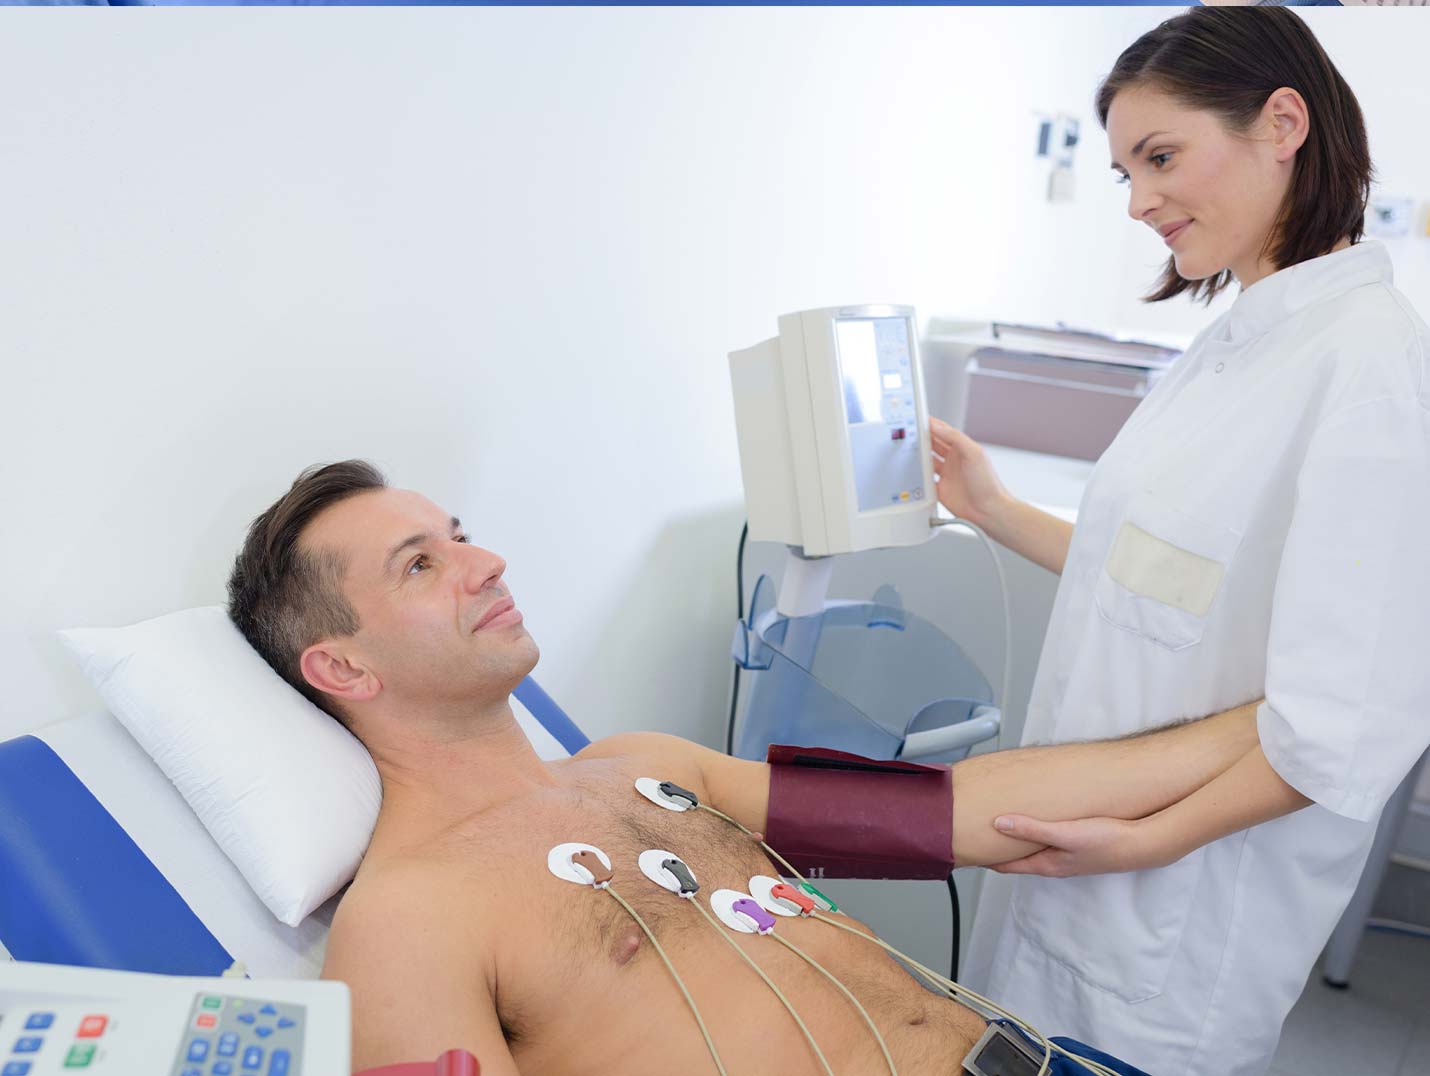 Paciente sin camisa recostado en una silla reclinable, con seis electrodos en su pecho, mientras un médico le toma la presión